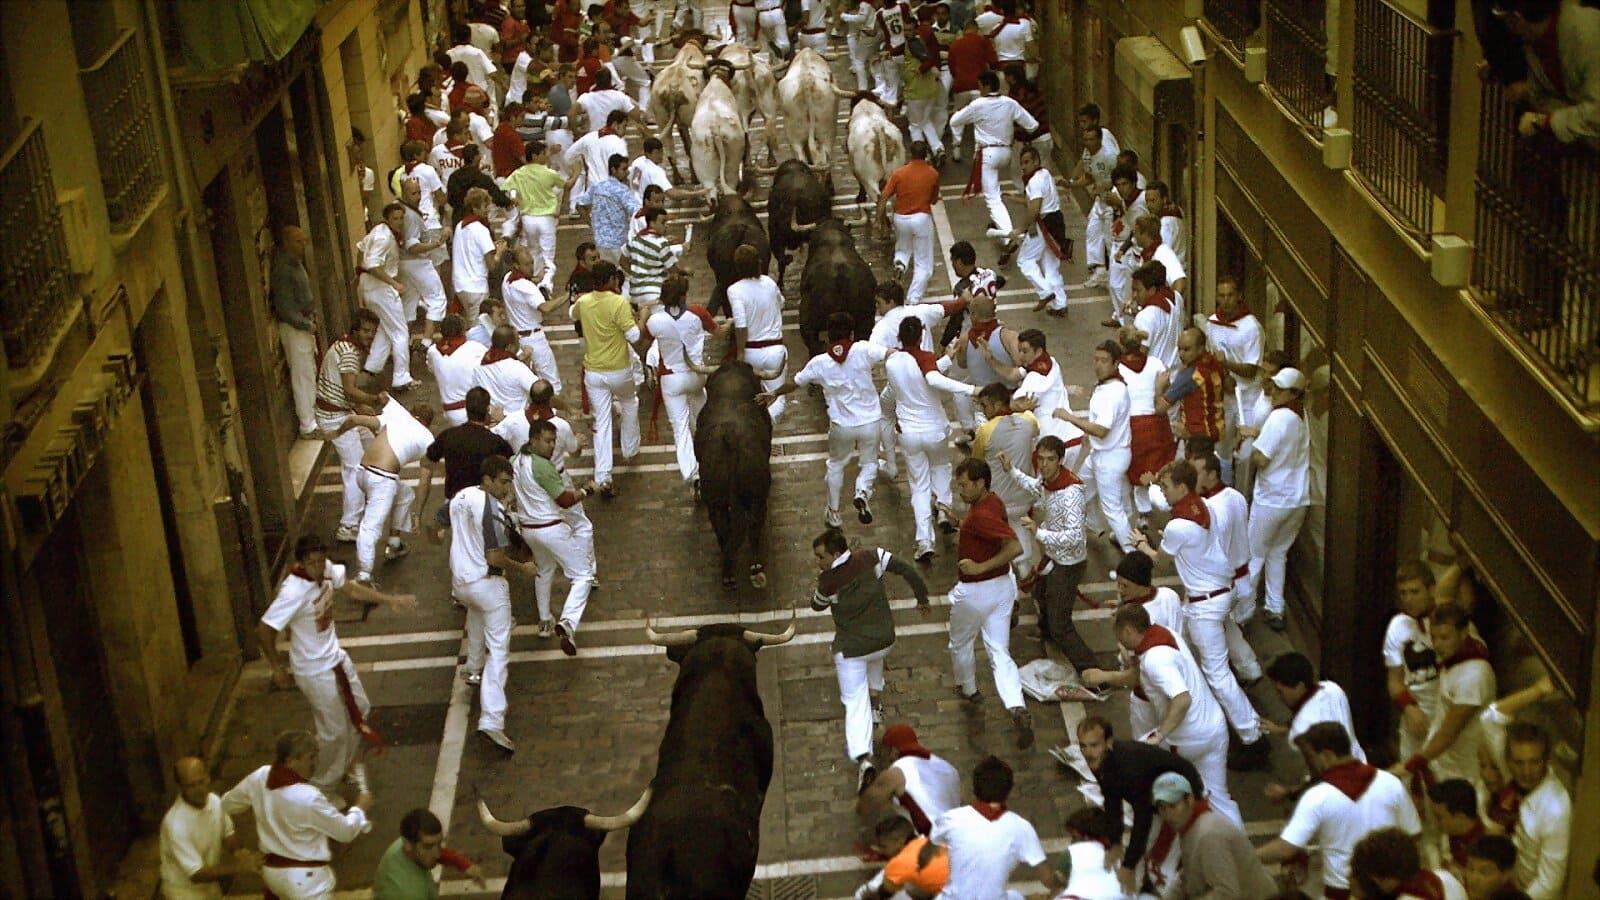 Encierro 3D: Bull Running in Pamplona